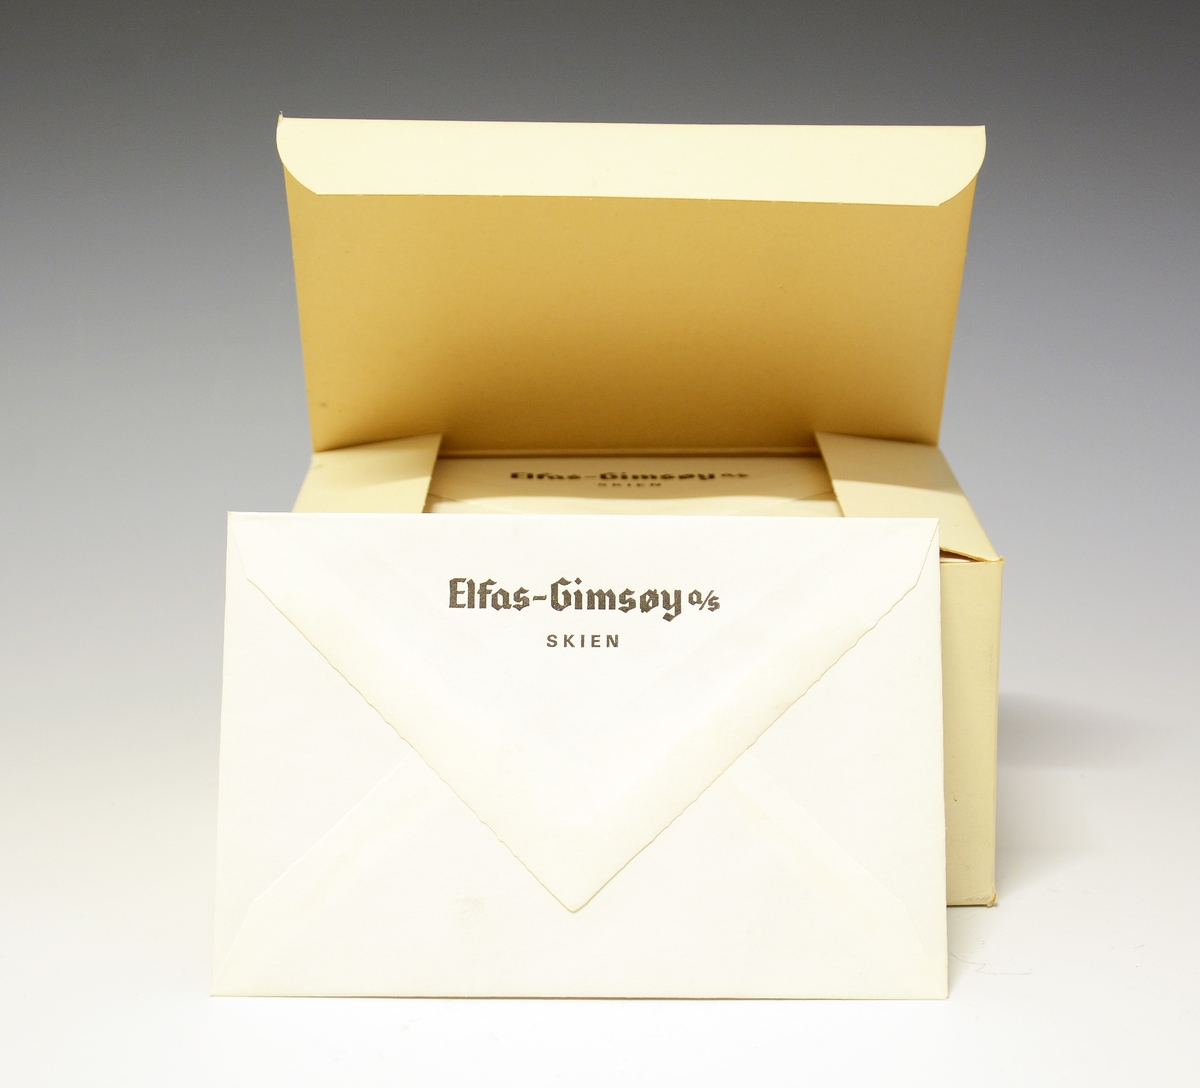 Rektangulær pappboks med vippelokk med ubrukte konvolutter. Konvoluttene har firmanavnet Elfas-Gimsøy A/S Skien på baksiden.